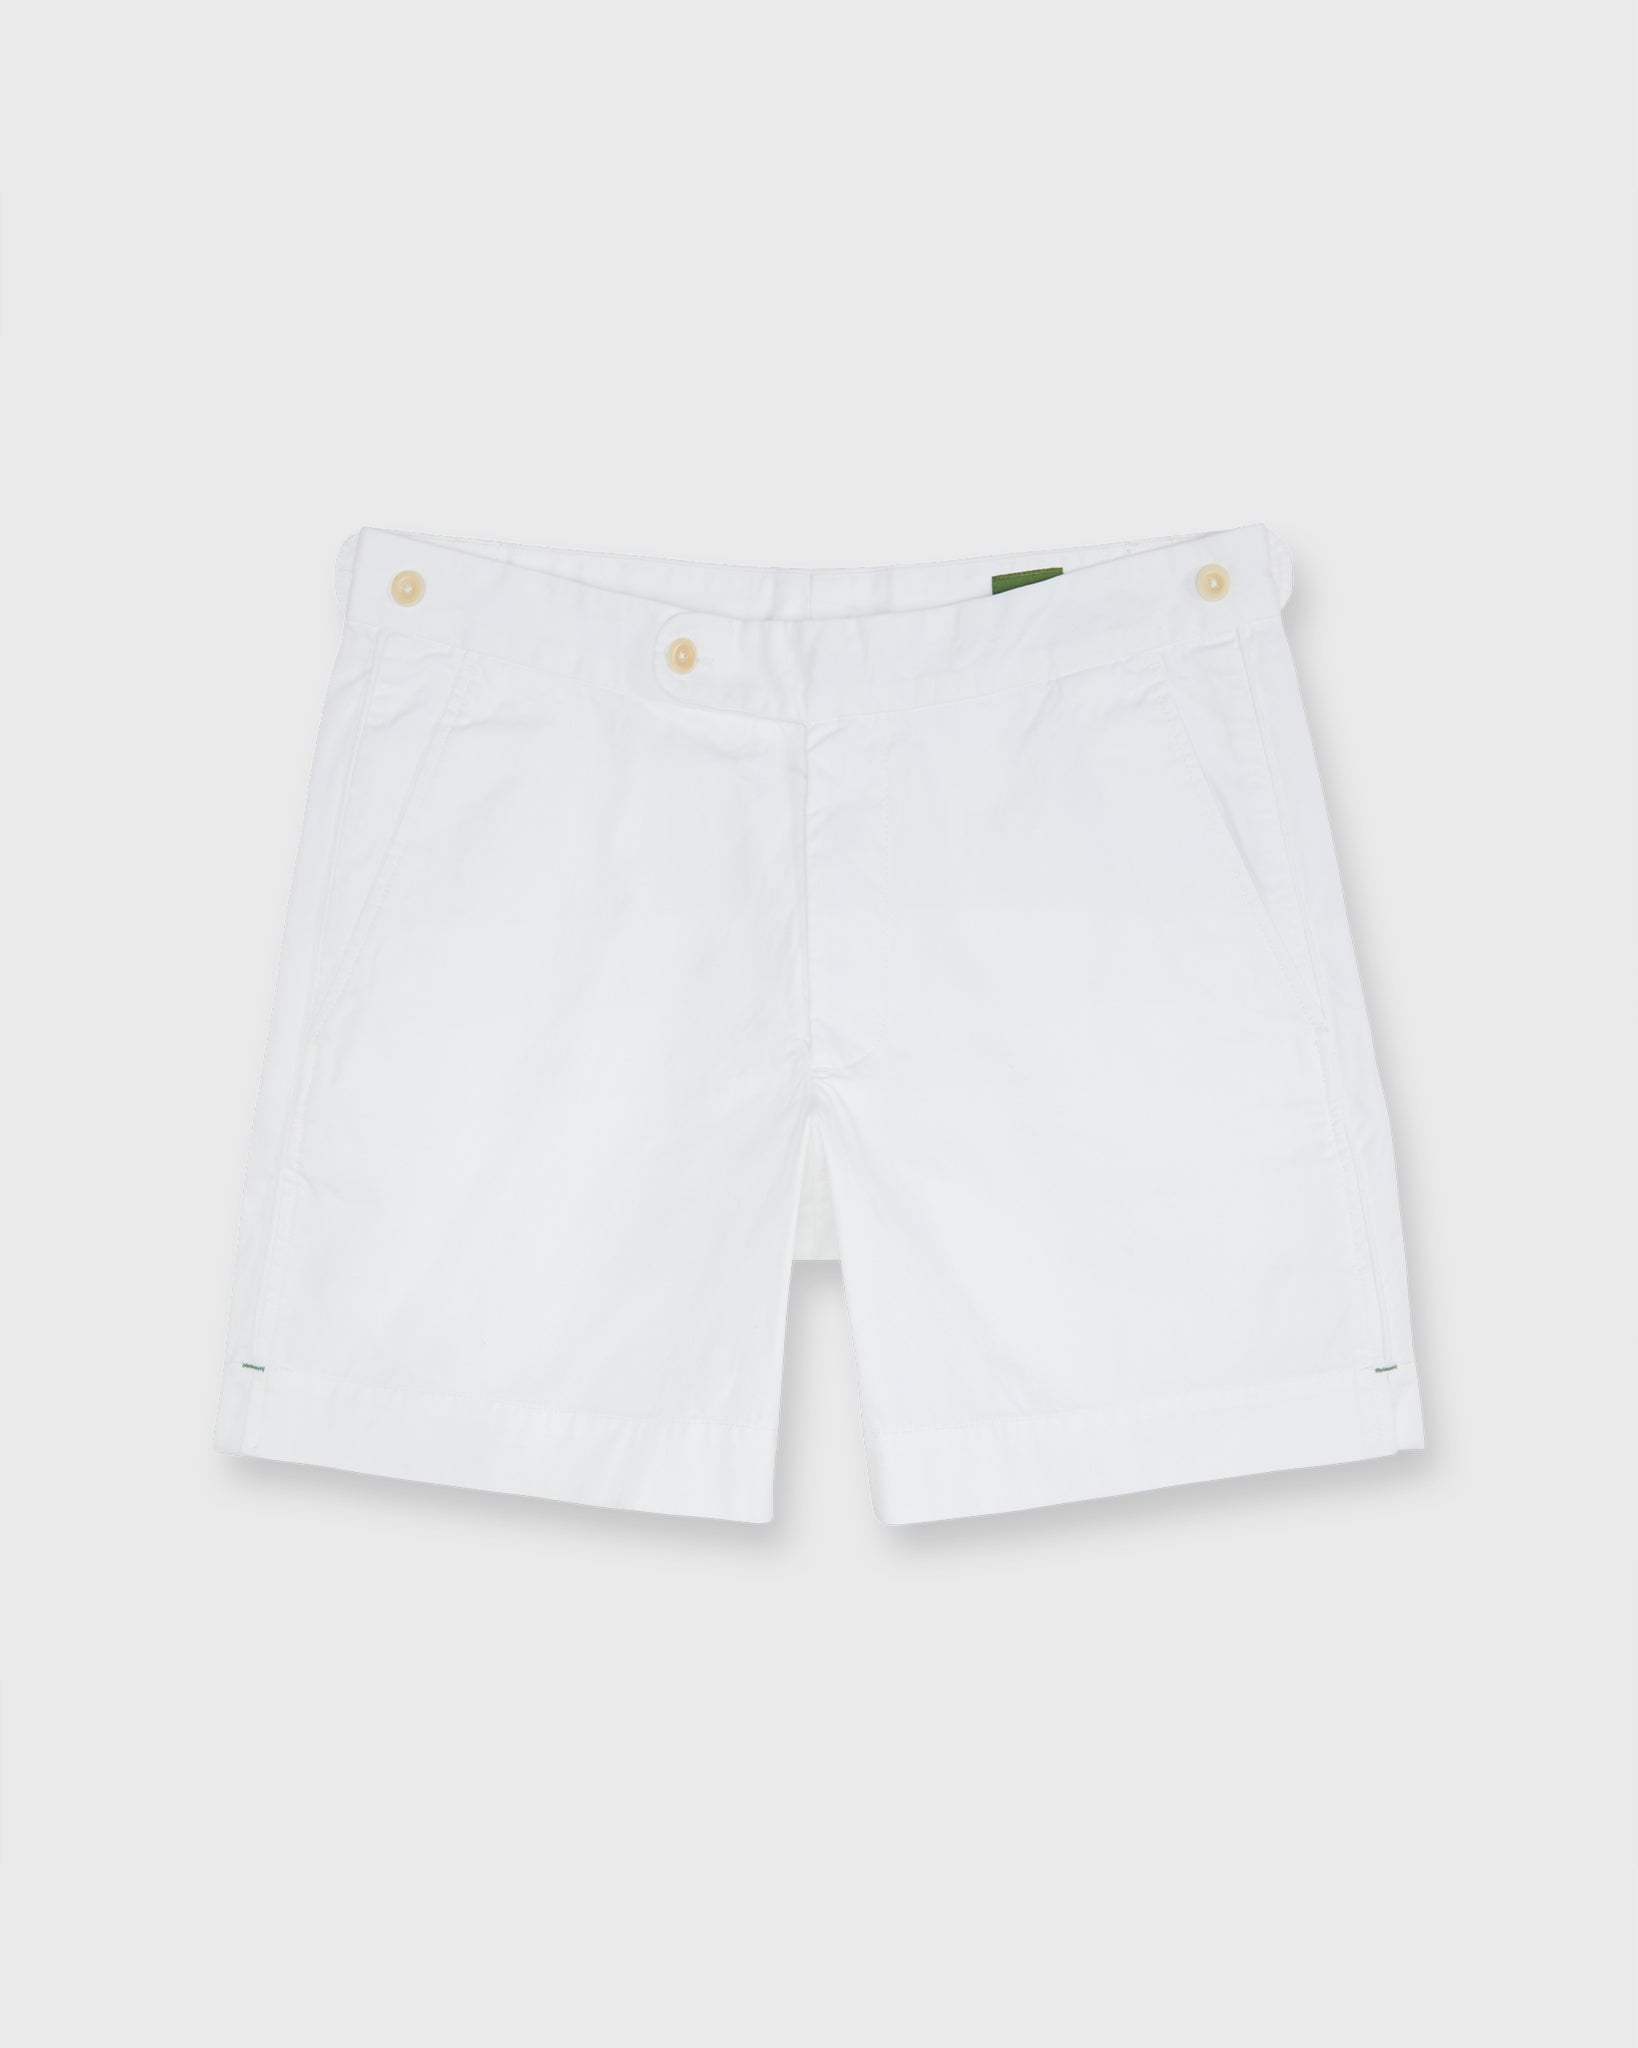 Tennis Short in White/White AP Lightweight Twill